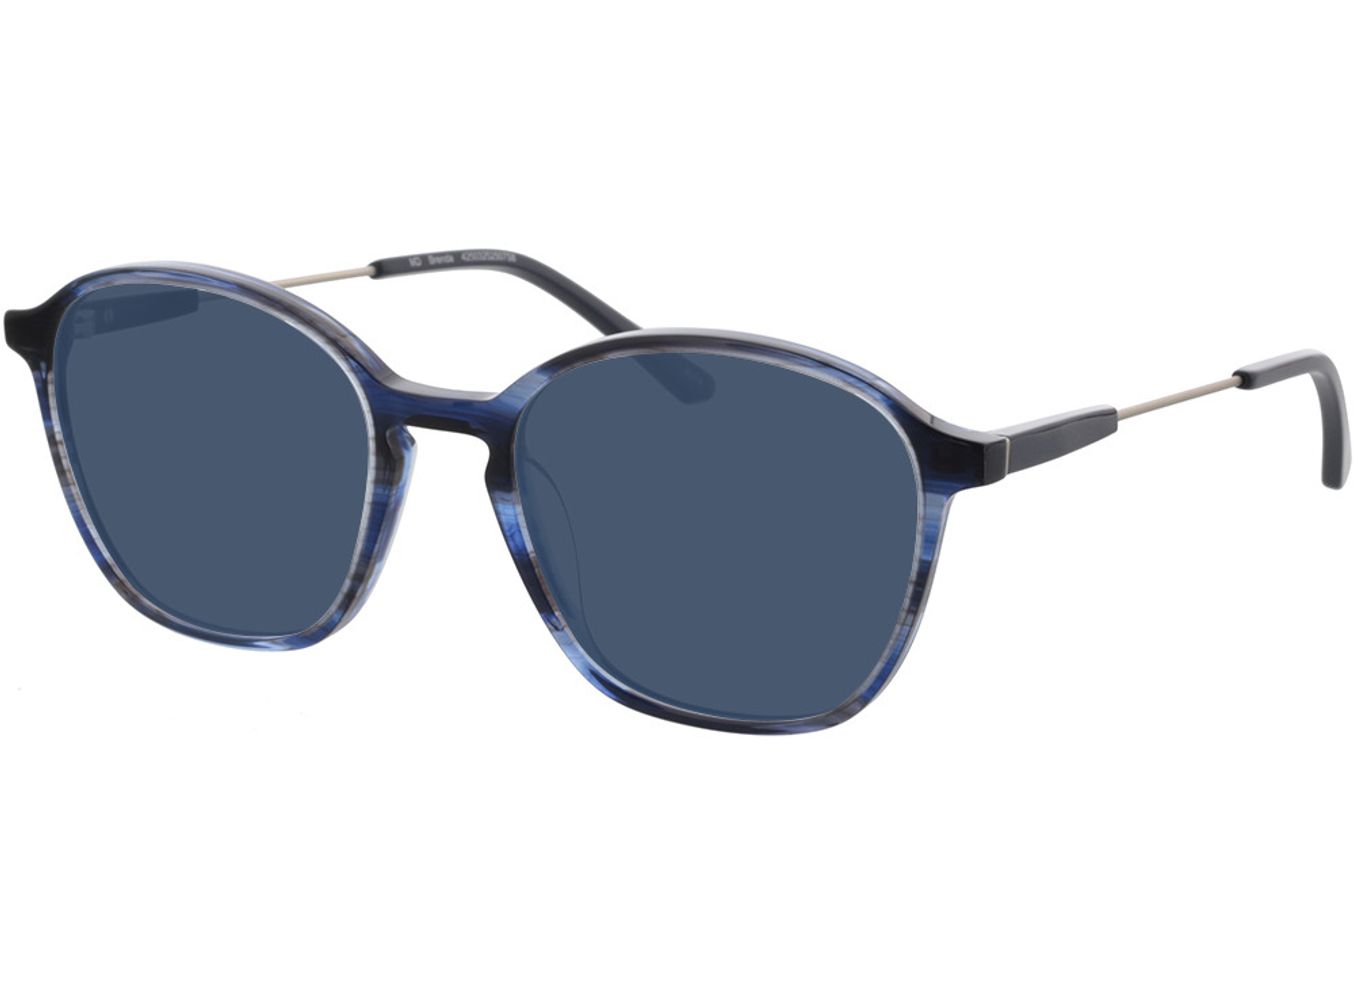 Brenda - blau/silber Sonnenbrille mit Sehstärke, Vollrand, geometric von Brille24 Collection